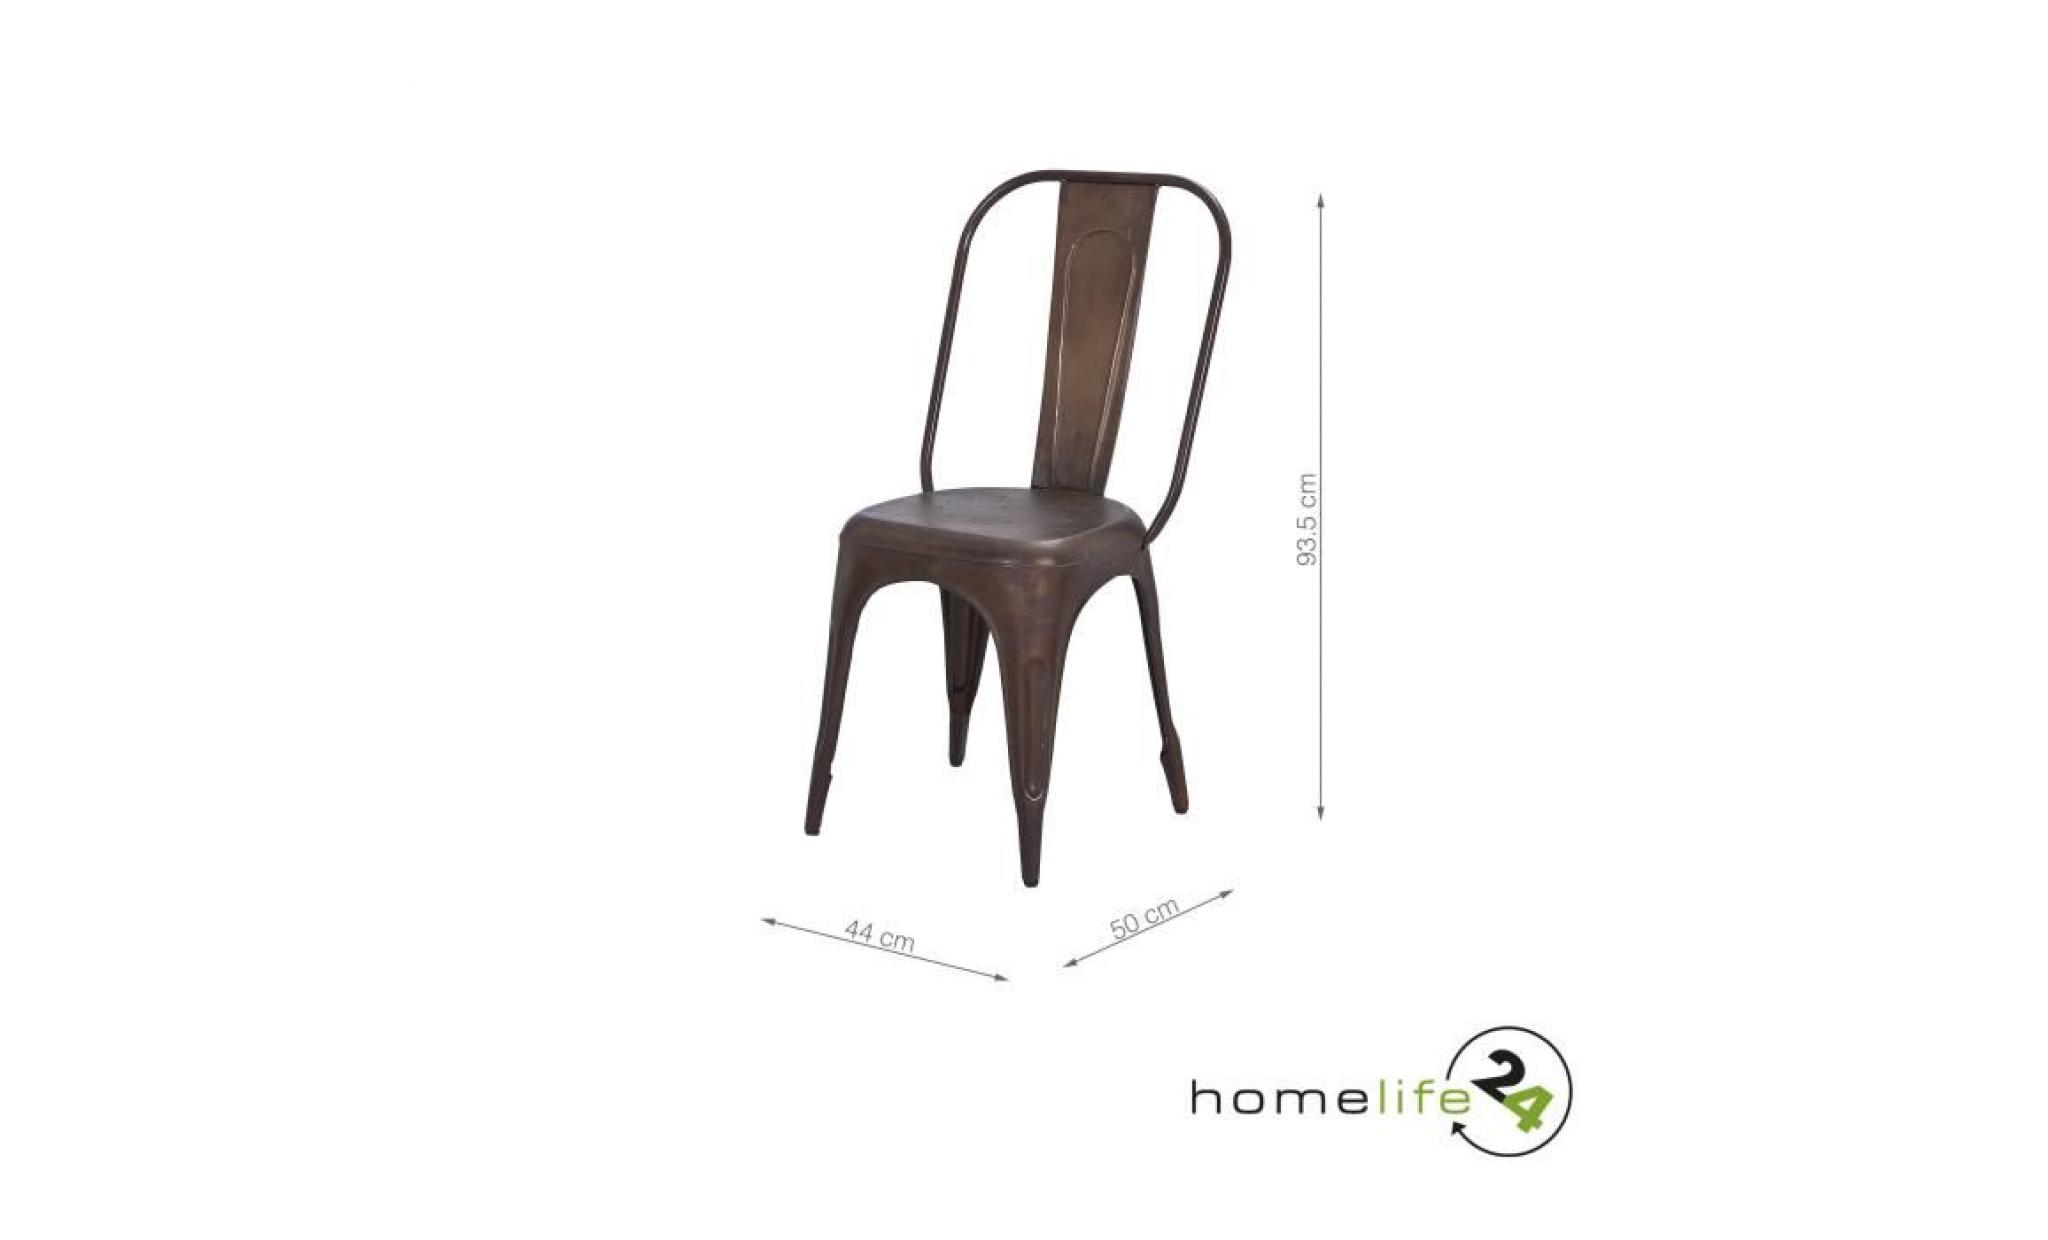 set de 4, chaise metal couleur, chaise design, chaise vintage, chaise industriel metal, chaise industrielle, chaise en fer, rouille pas cher